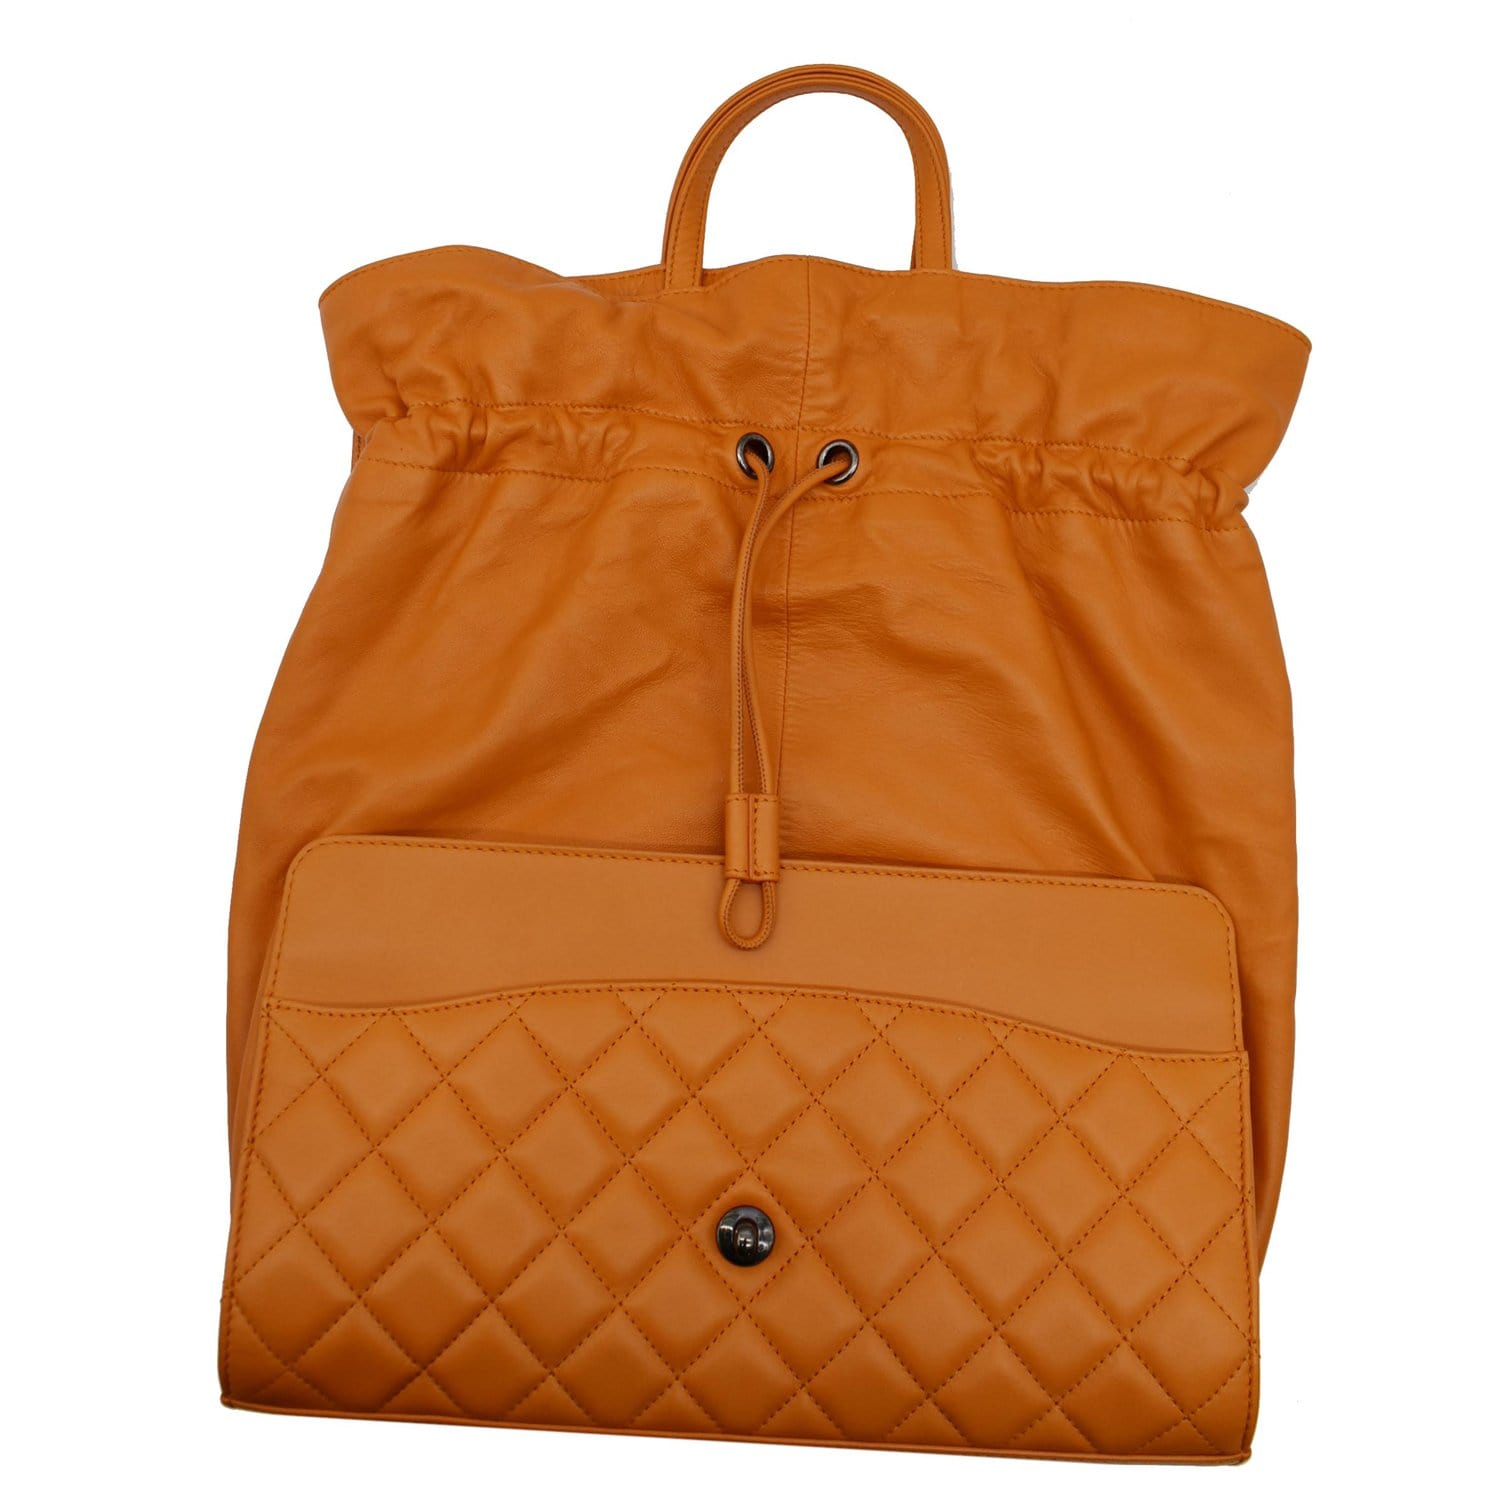 Chanel Sac À Rabat Orange Leather Shoulder Bag (Pre-Owned)